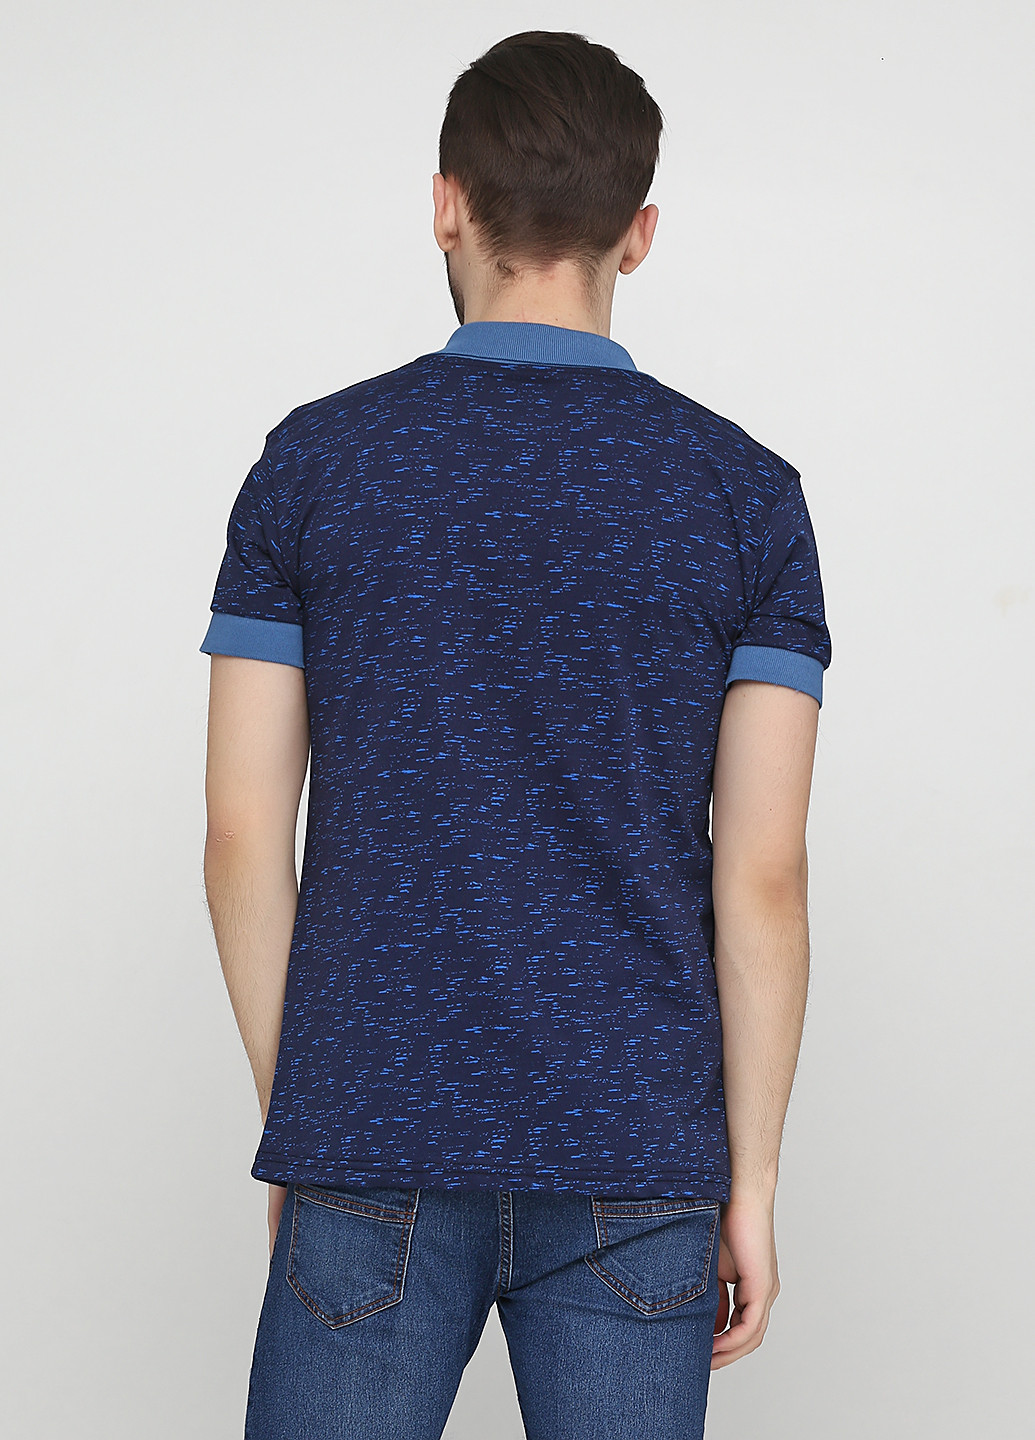 Синяя футболка-поло для мужчин Chiarotex меланжевая